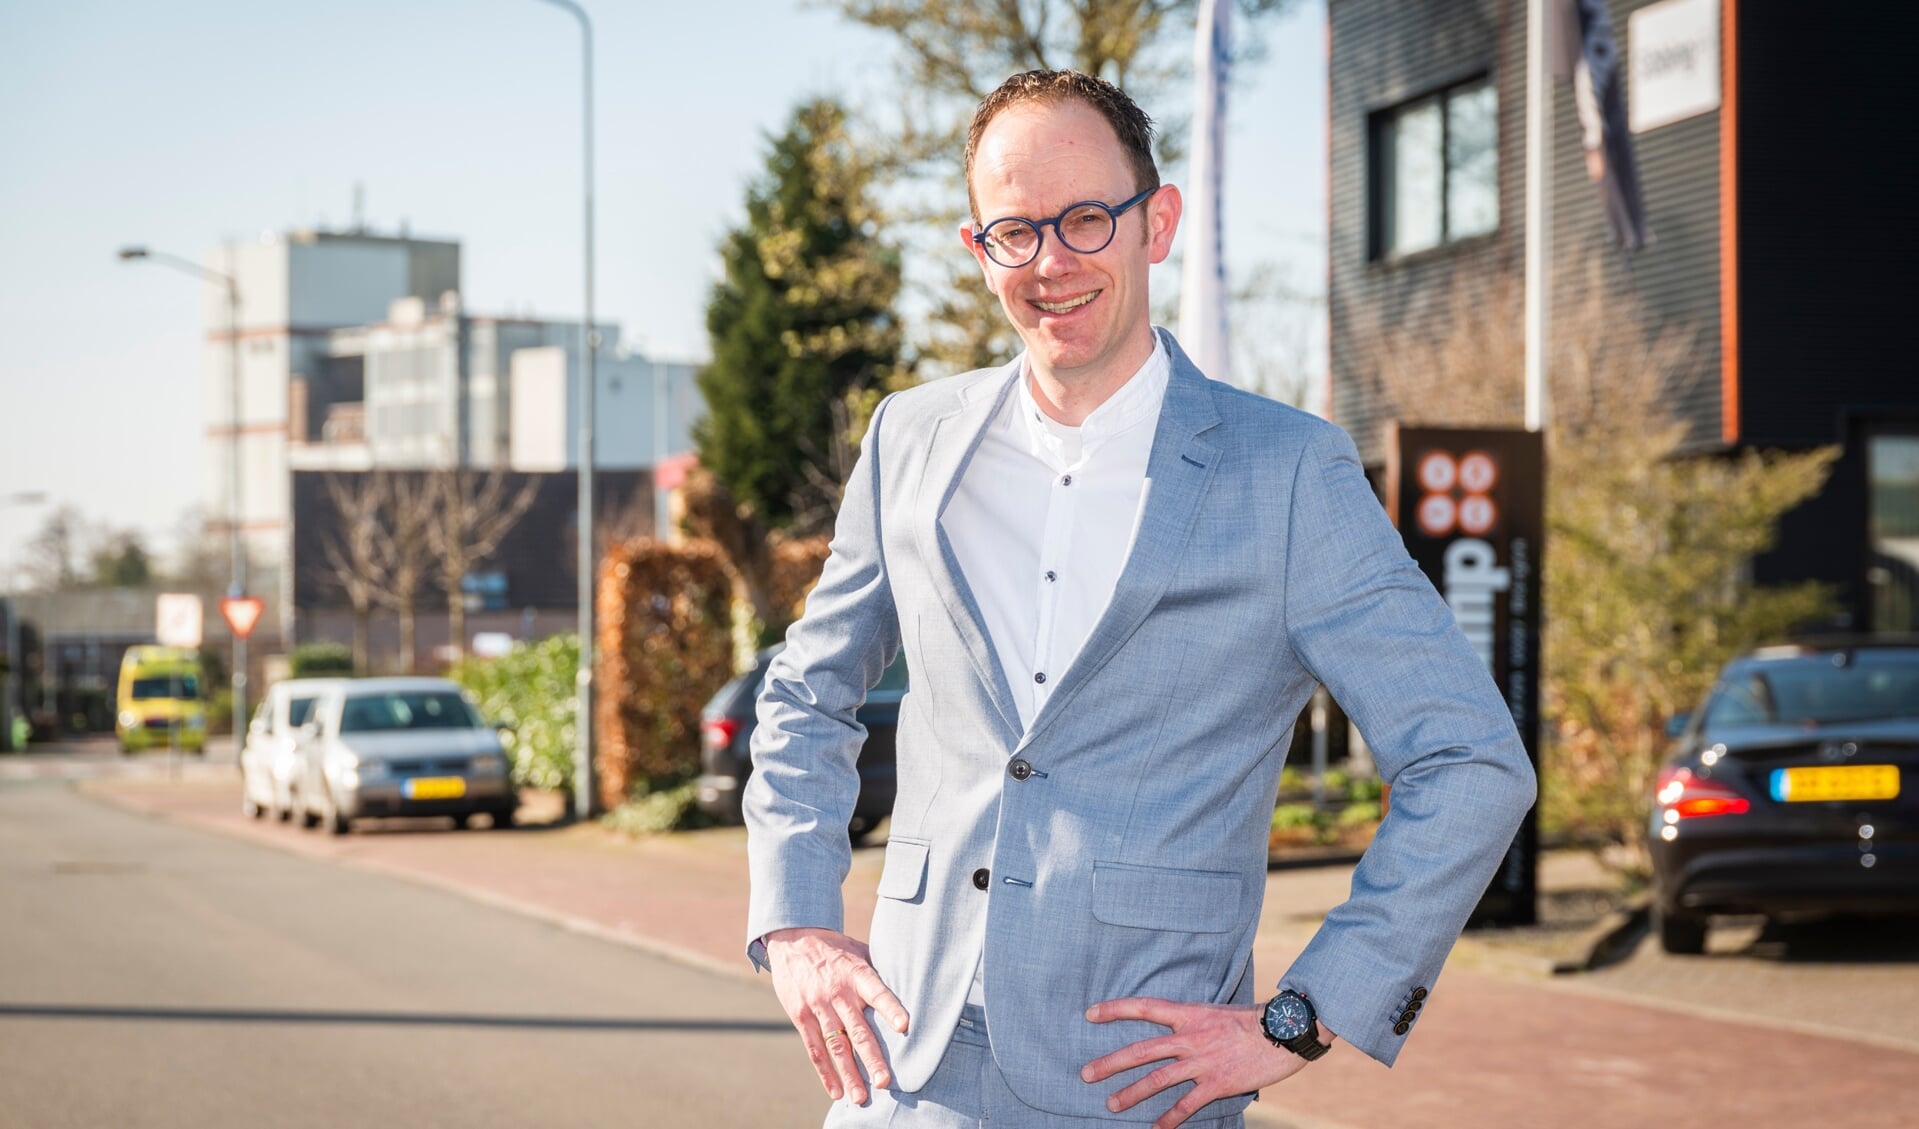 Financieringsspecialist Tonny van Dijk is vandaag gestart als adviseur van Eijgen Finance.